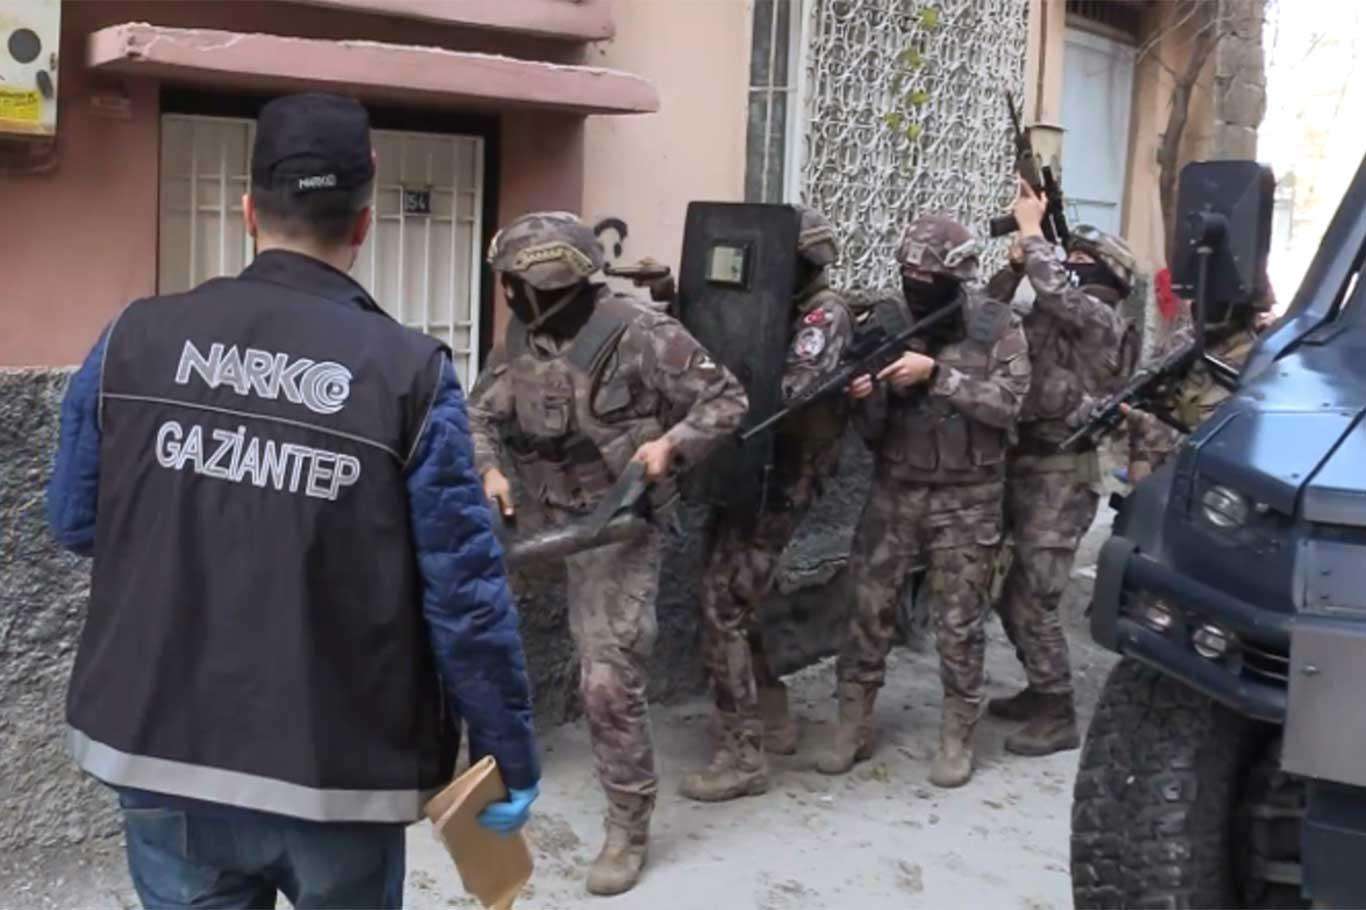 Gaziantep’te uyuşturucu operasyonu: 2 zanlı tutuklandı